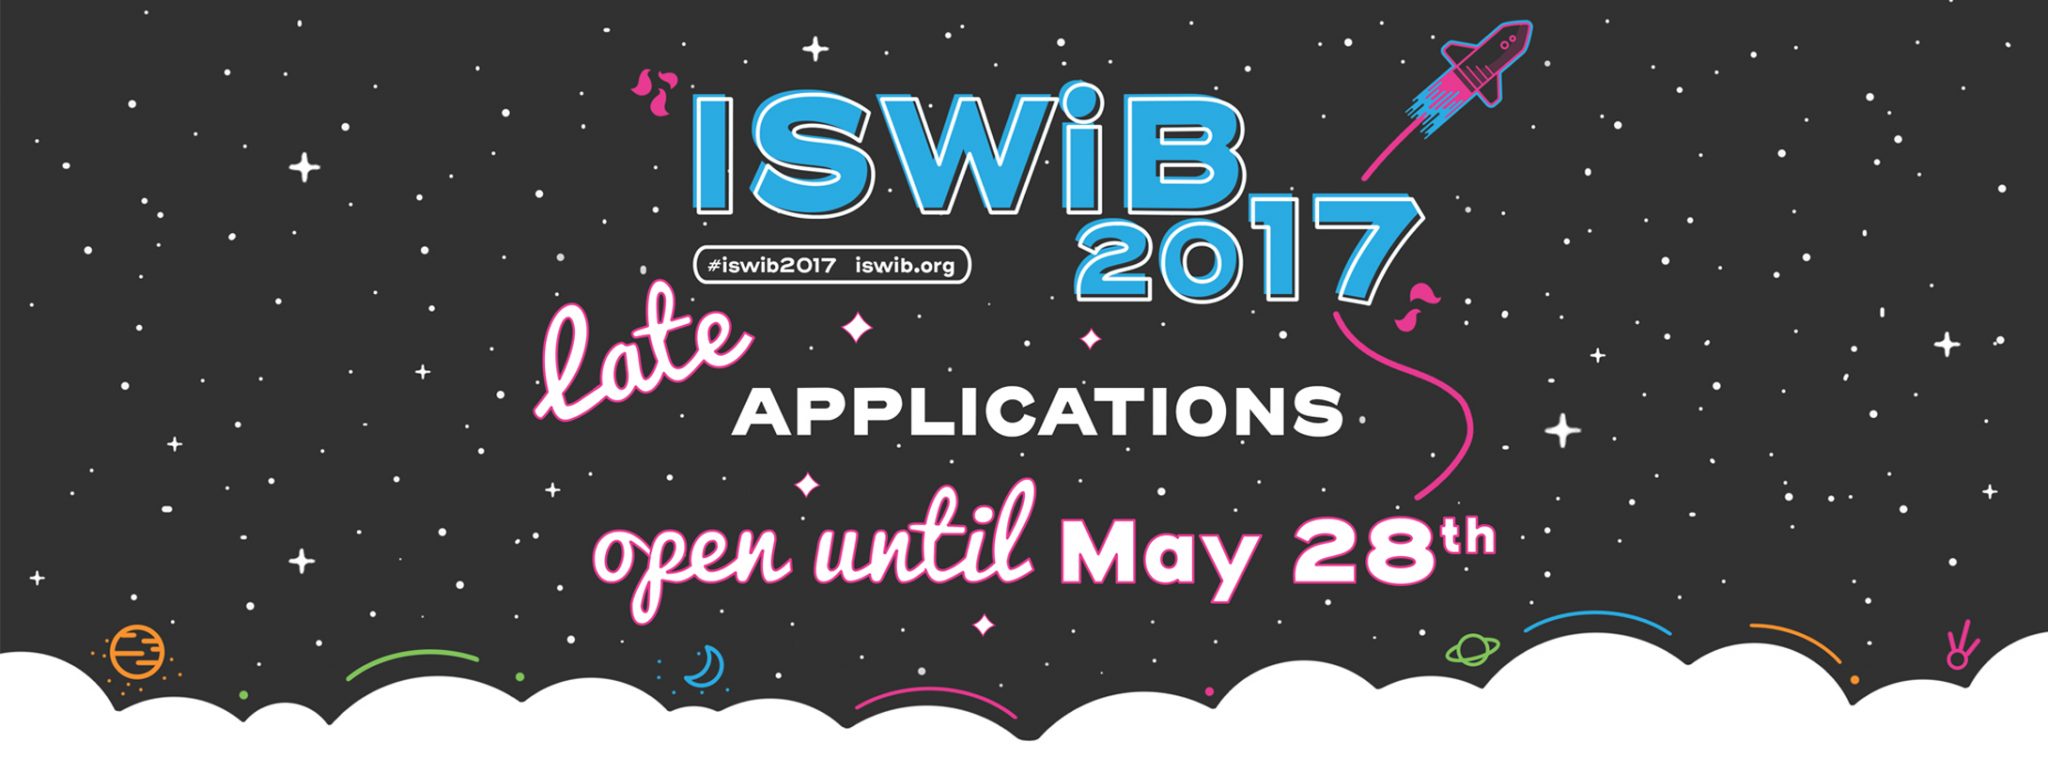 Otvorene naknadne prijave za ISWiB 2017